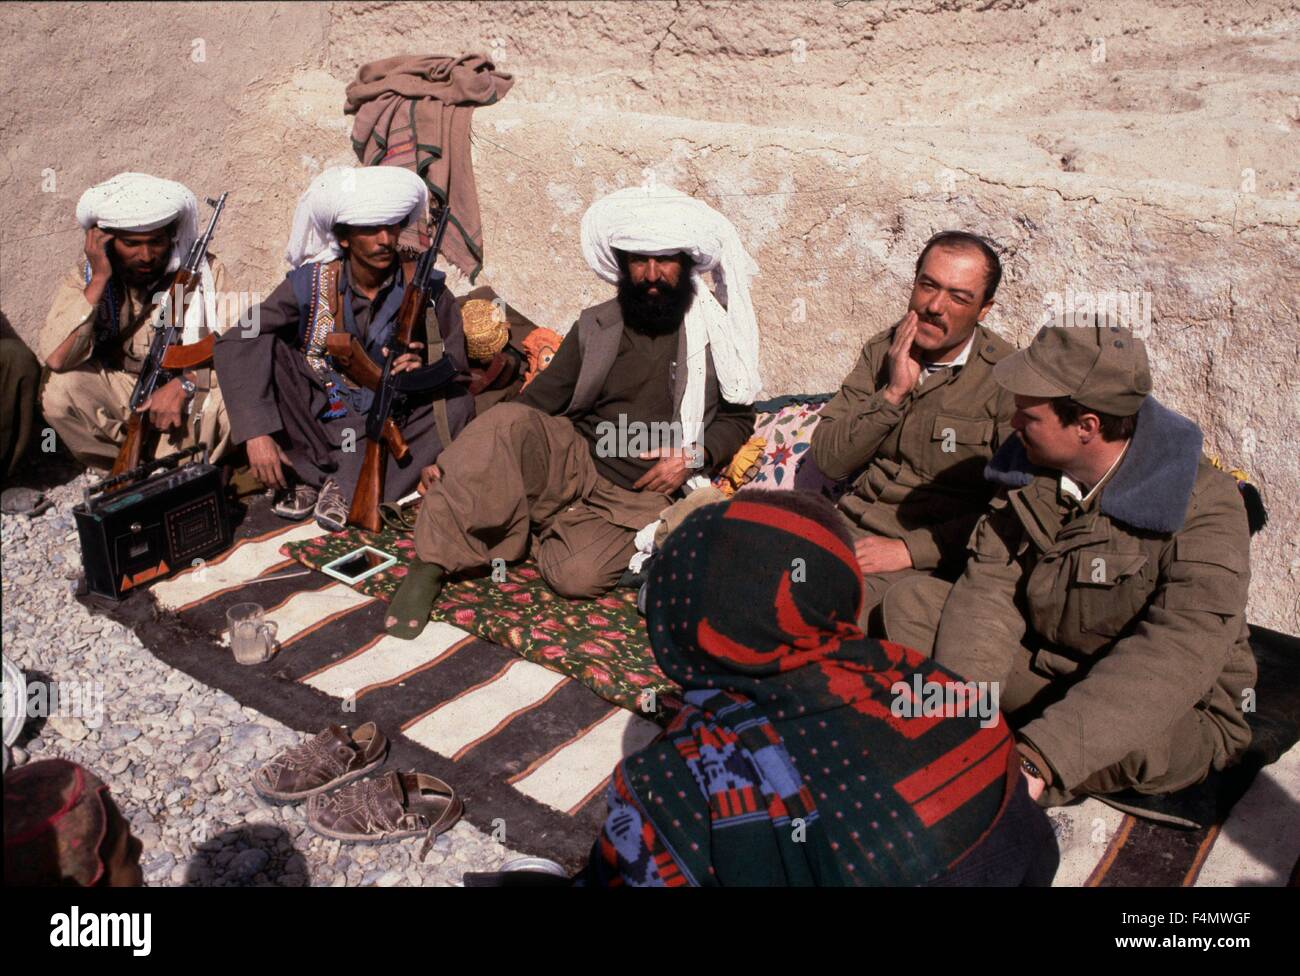 Военный конфликт в афганистане. Моджахеды в Афганистане 1979. Талибы Афганистан 1979. Афганские моджахеды 1989. Белуджи в Афганистане.